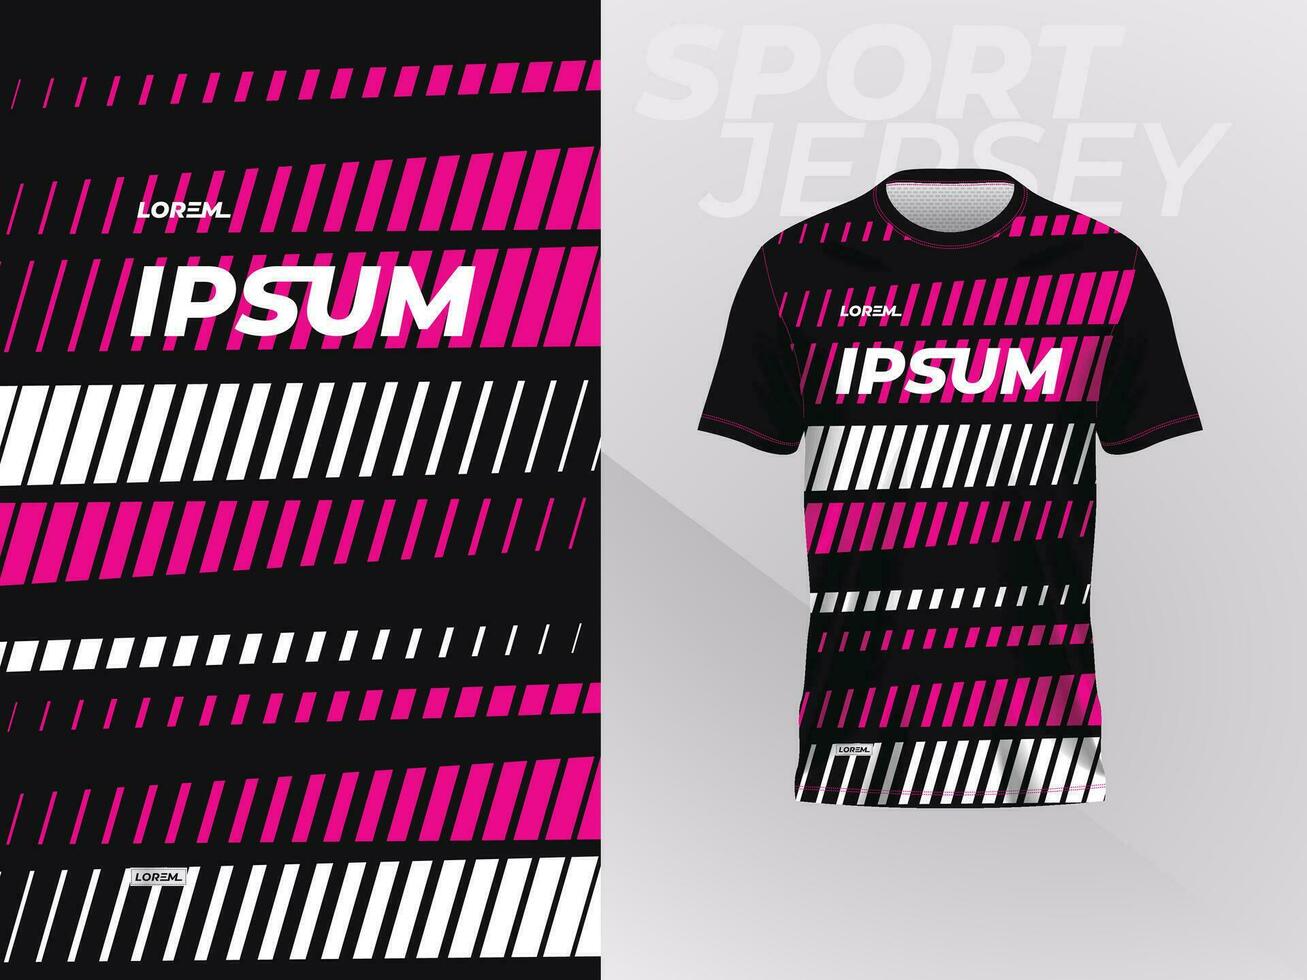 zwart roze overhemd sport Jersey mockup sjabloon ontwerp voor voetbal, Amerikaans voetbal, racen, gamen, motorcross, wielersport, en rennen vector